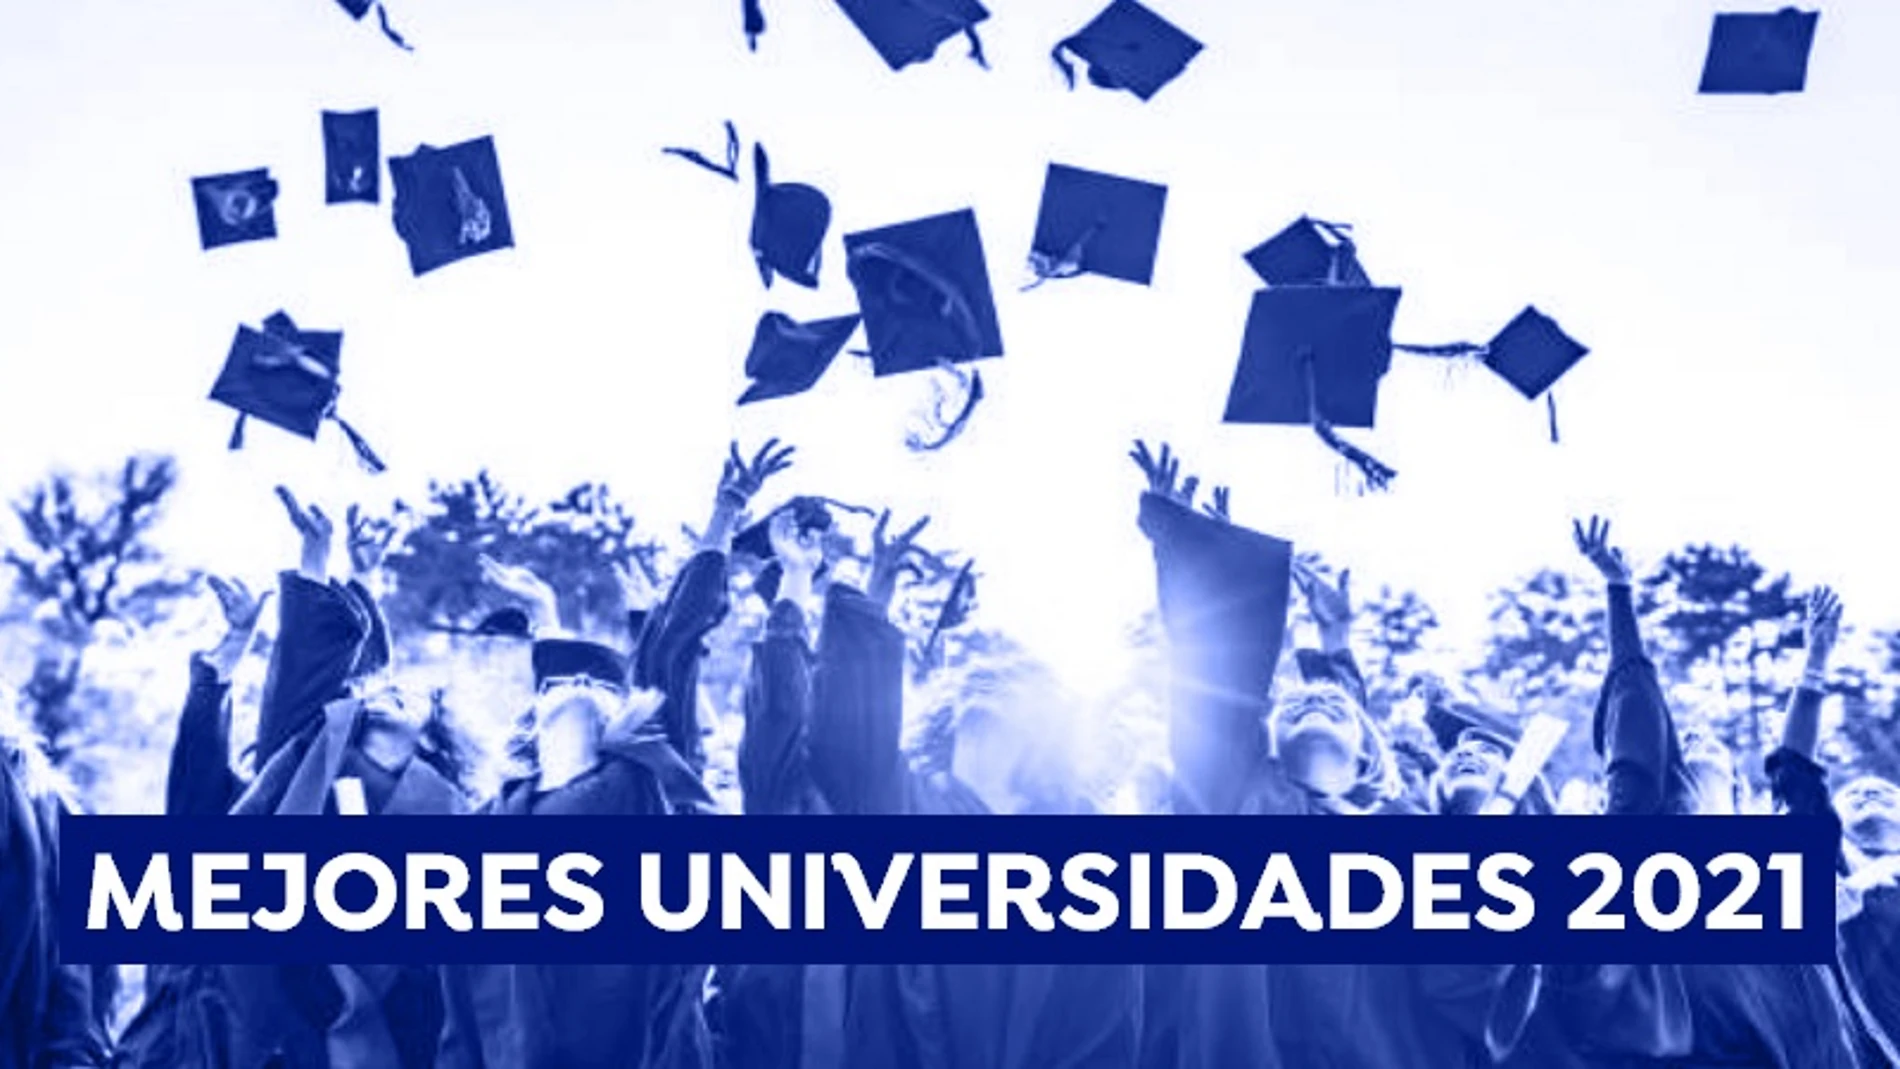 El ranking de las mejores universidades de España de 2021